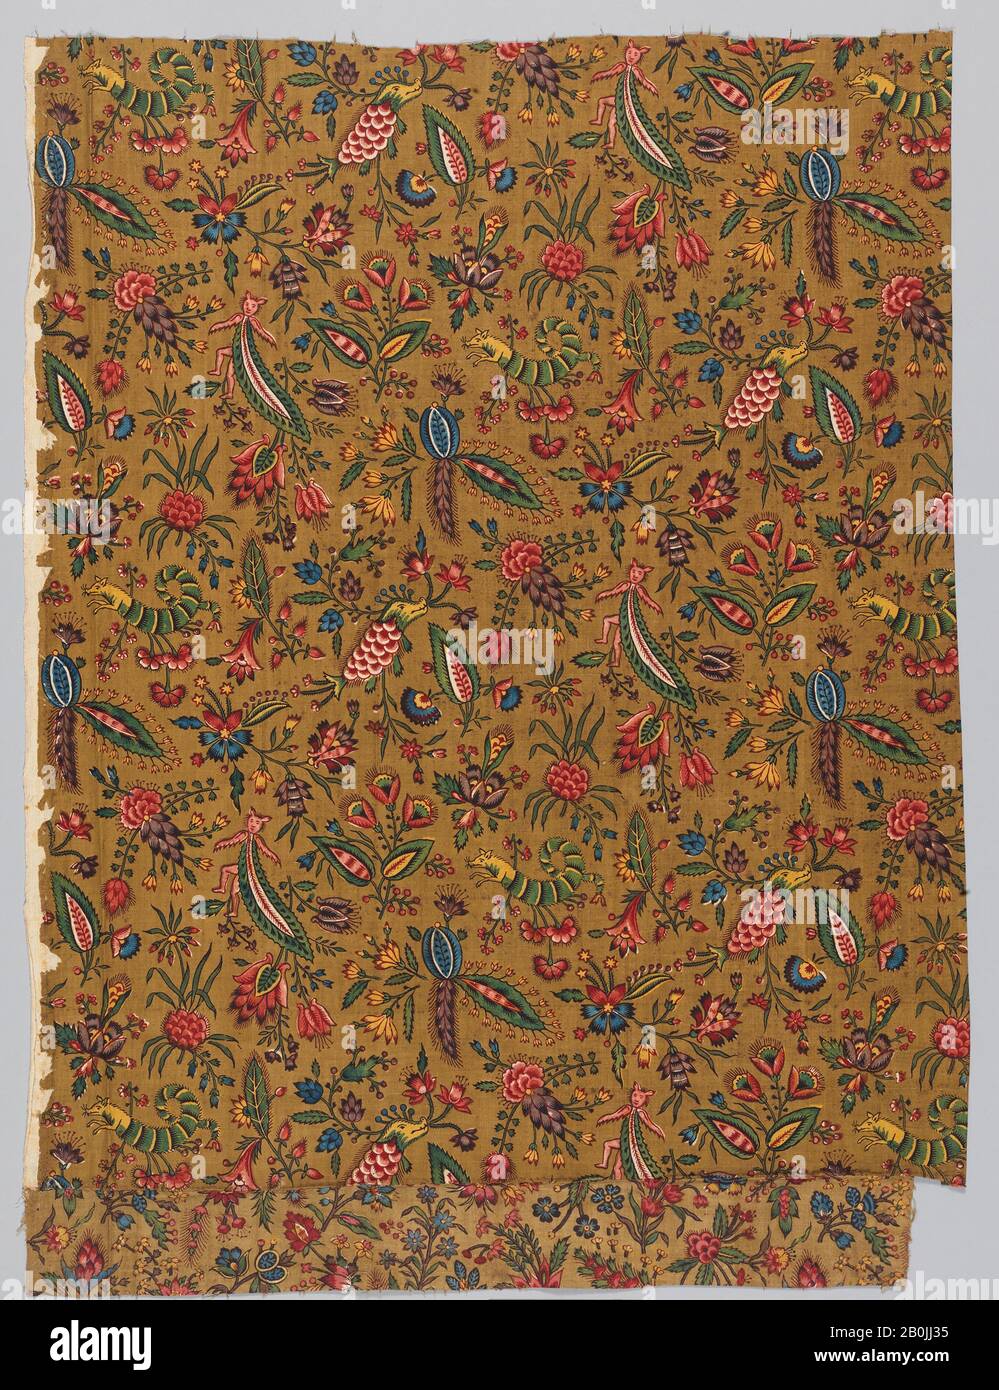 Oberkampf Manufactory, 'Les Coquecigrues', Francese, Jouy-En-Josas, Ca. 1785, francese, Jouy-en-Josas, cotone, L. 29 3/4 x W. 27 3/4 pollici, 75,6 x 70,5 cm, Textiles-Printed Foto Stock